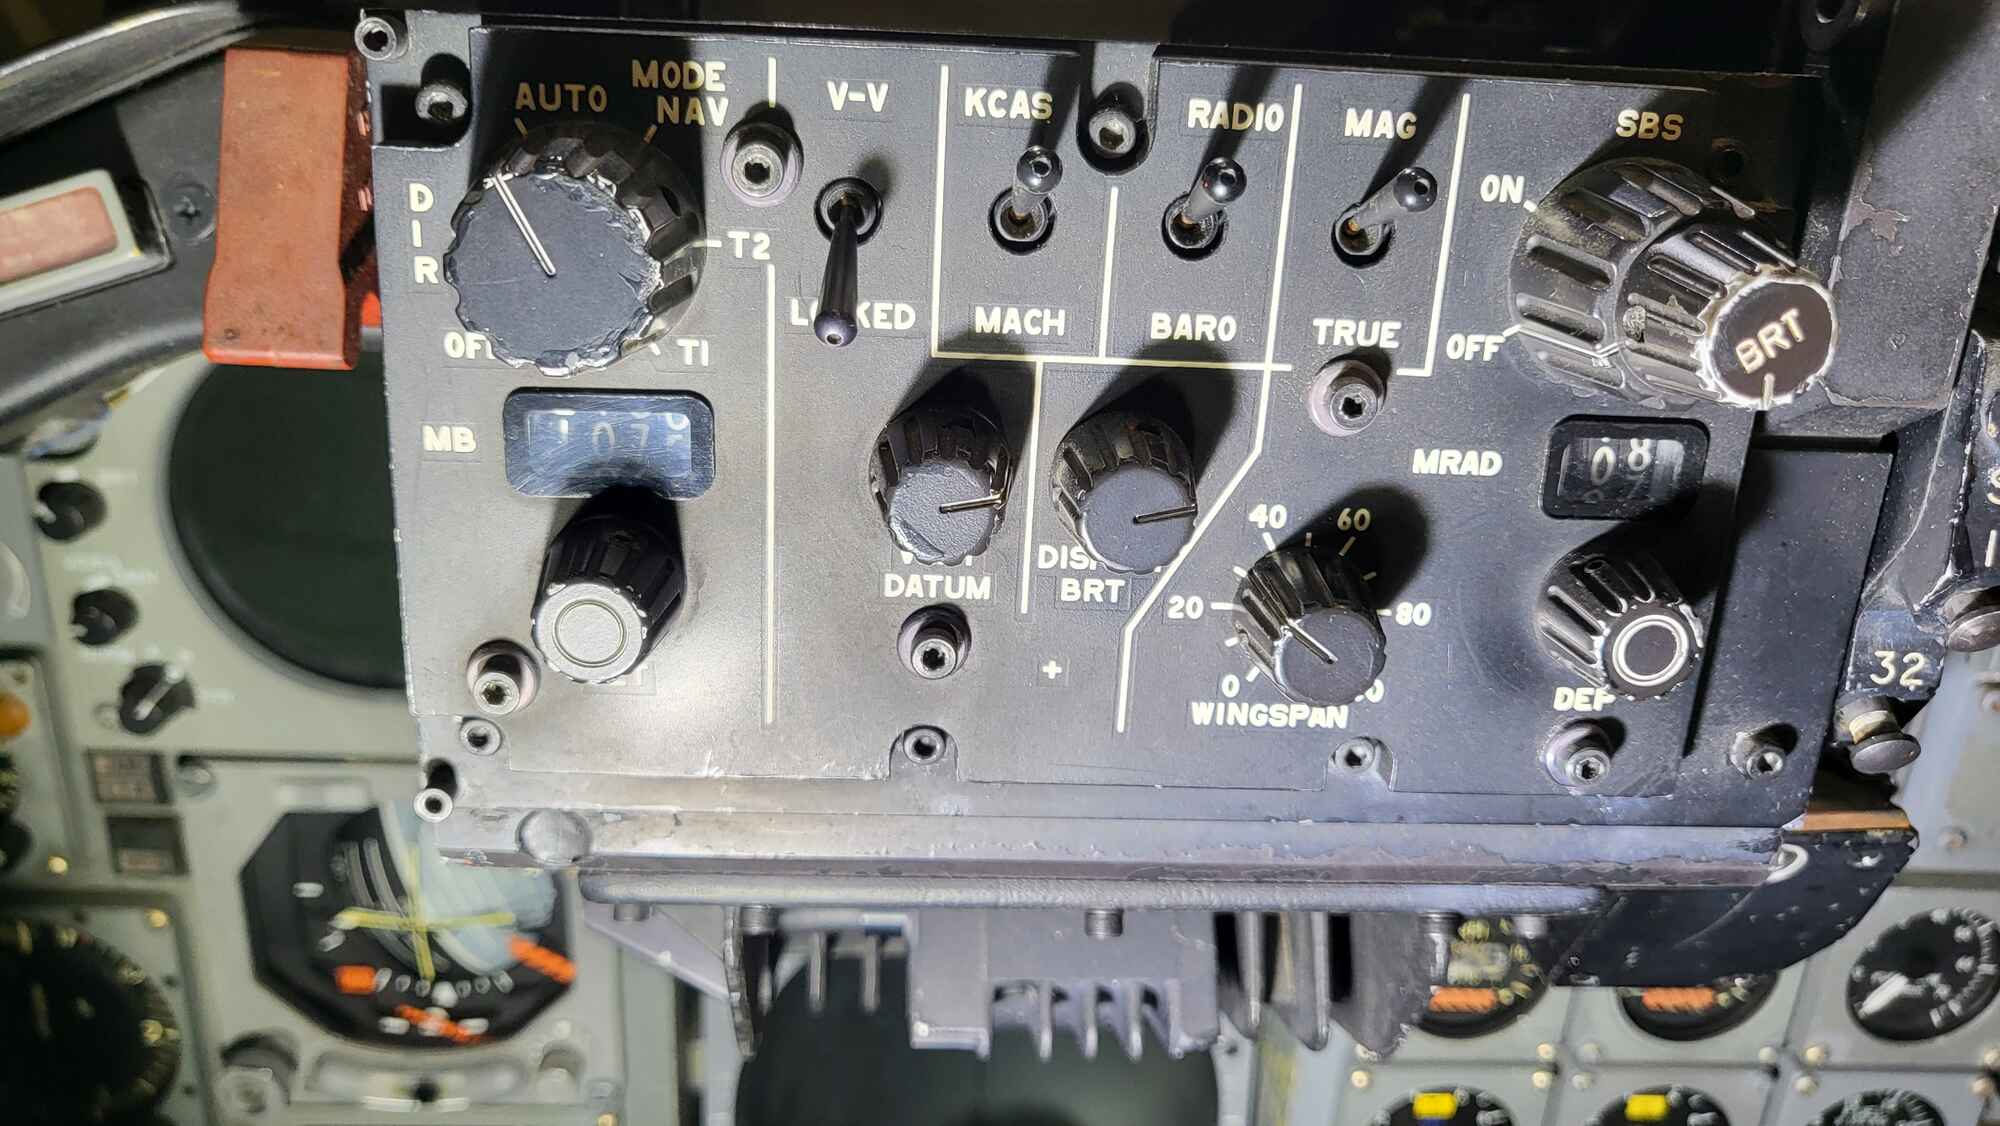 cockpit 1